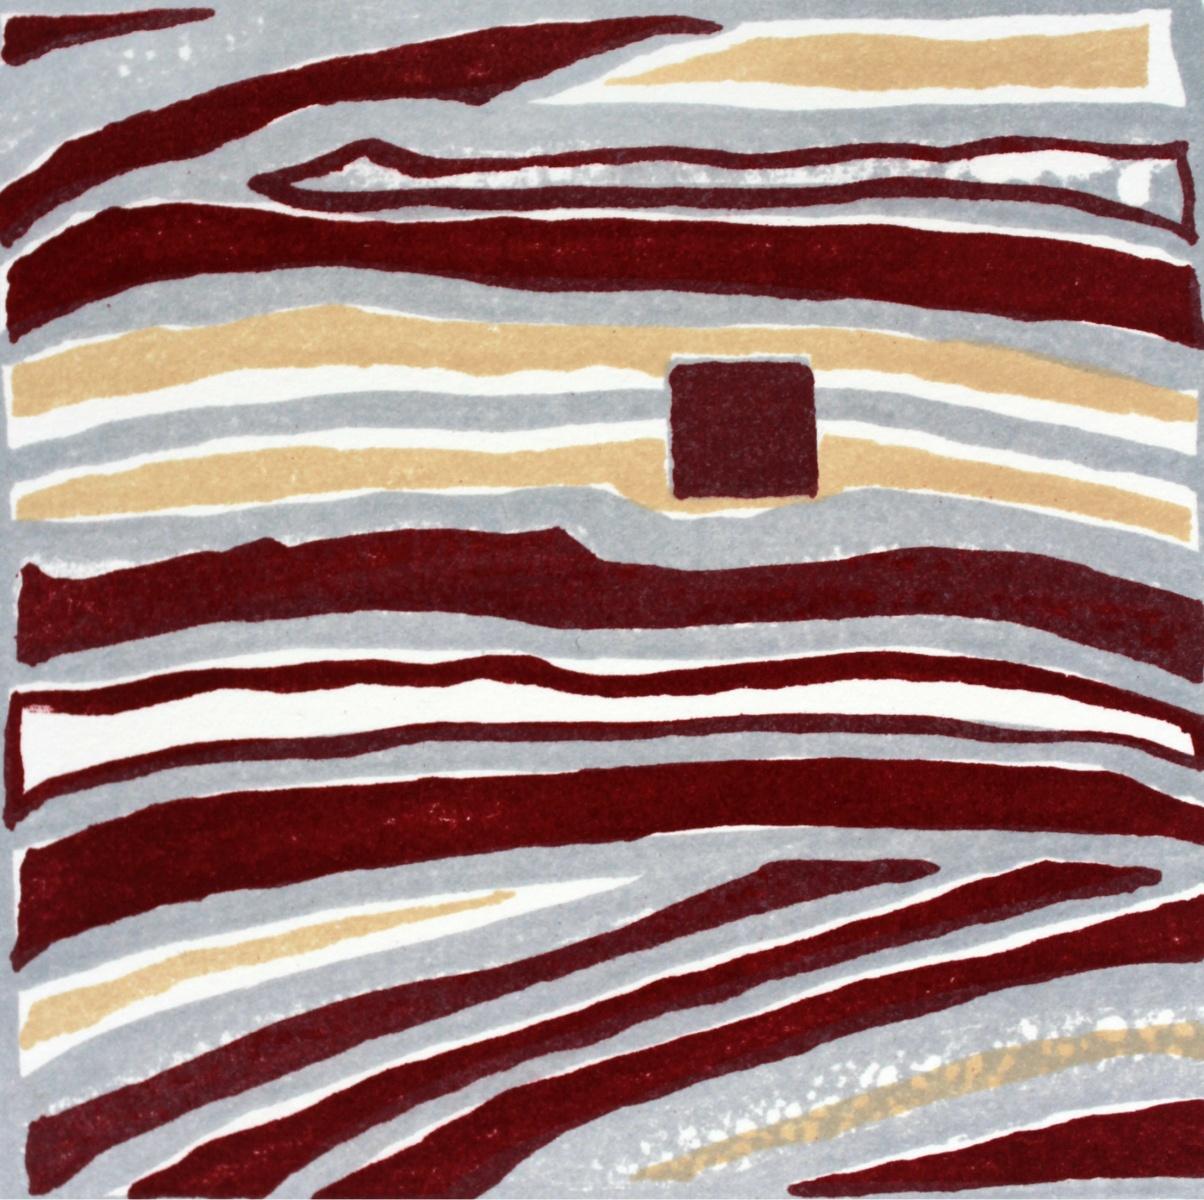 Composition VII - XXIe siècle, impression abstraite technique mixte, colorée